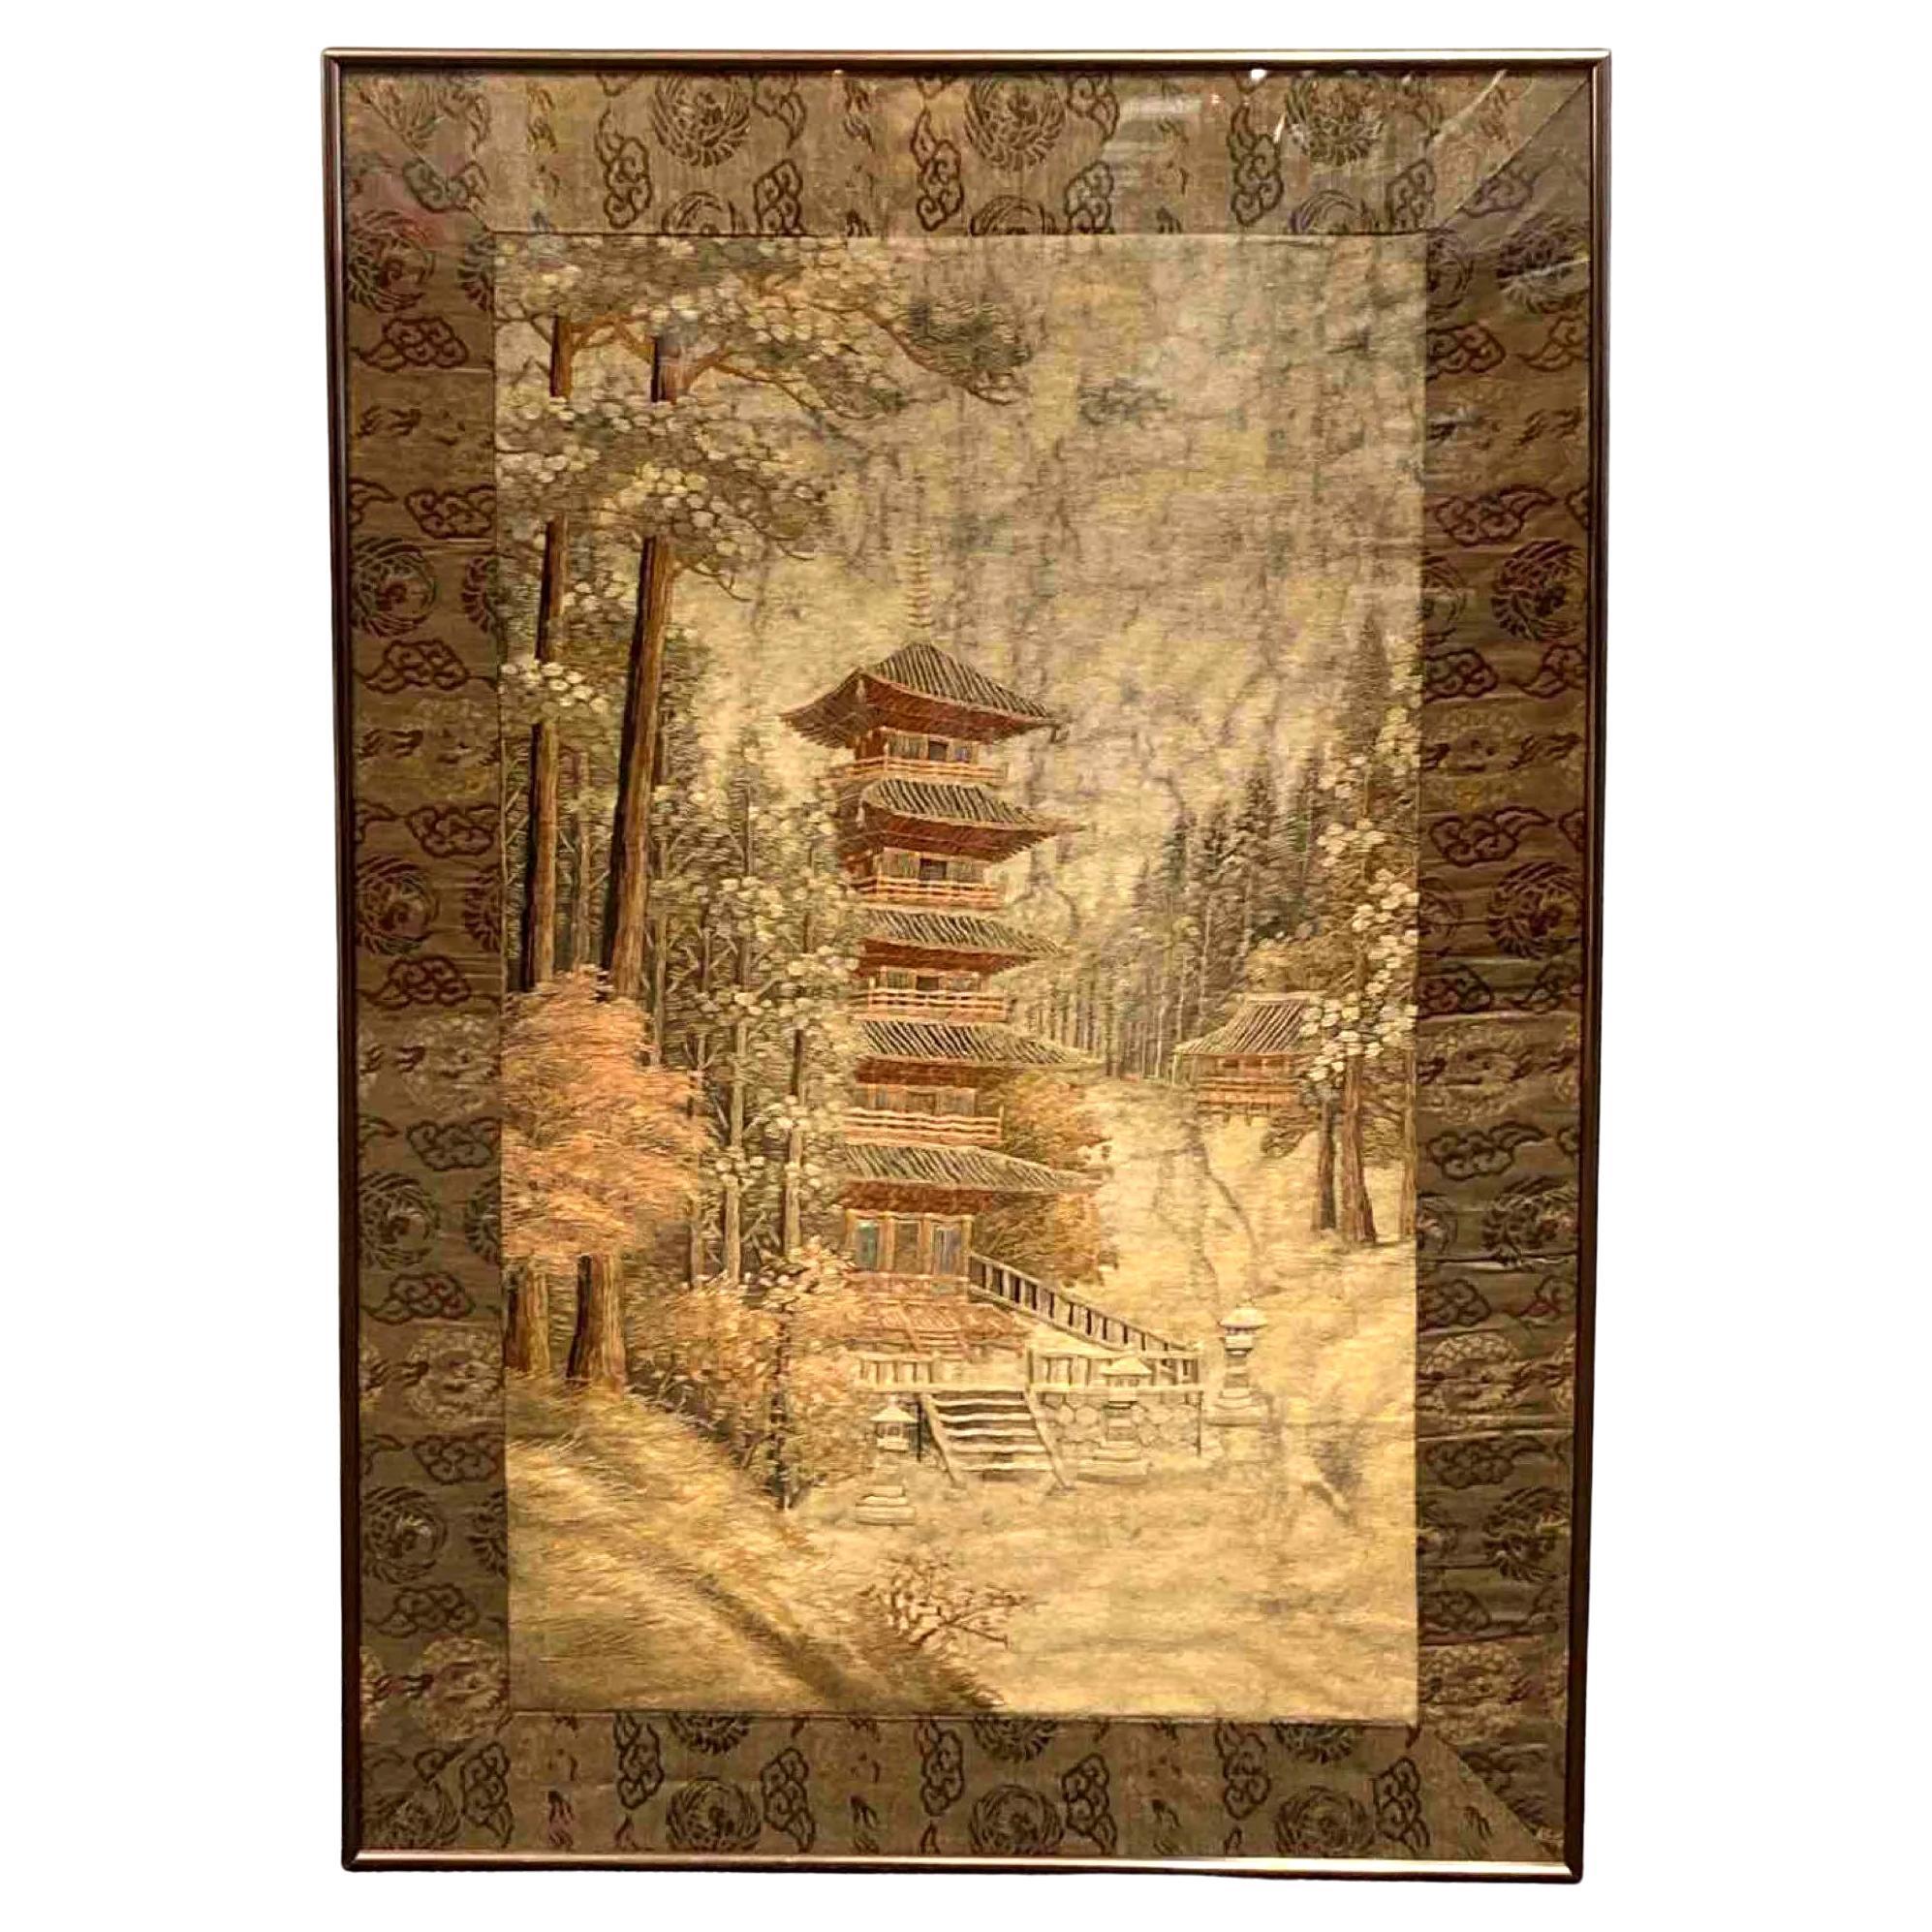 Panneau de paysage en broderie de soie japonaise représentant une pagode bouddhiste et un temple dans une forêt de pins et d'érables rouges. Ce type de panneaux picturaux a été réalisé principalement au début du XXe siècle (années 1910-20), vers la